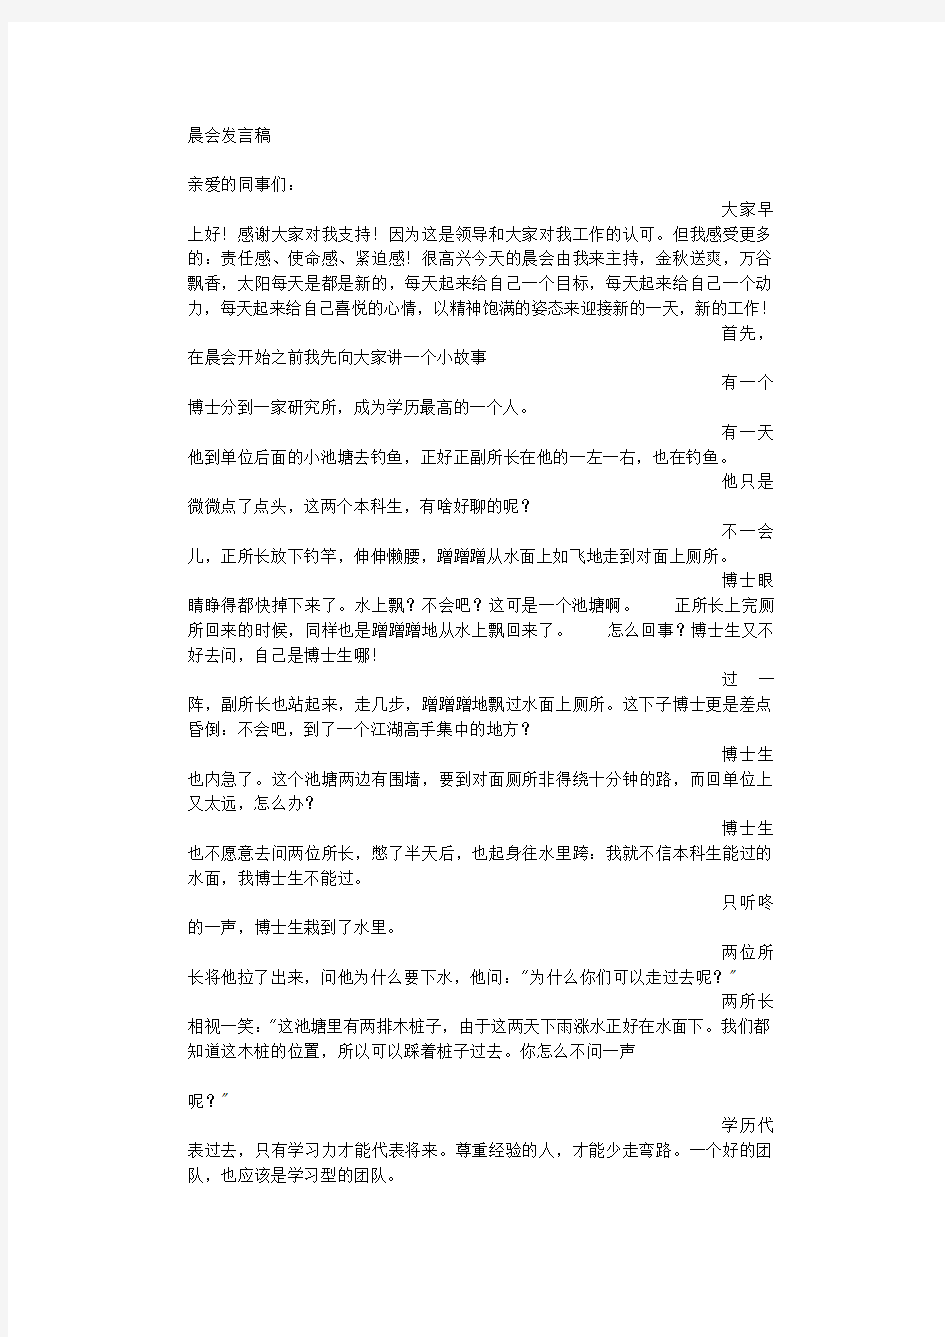 2020年公司晨会发言稿.pdf